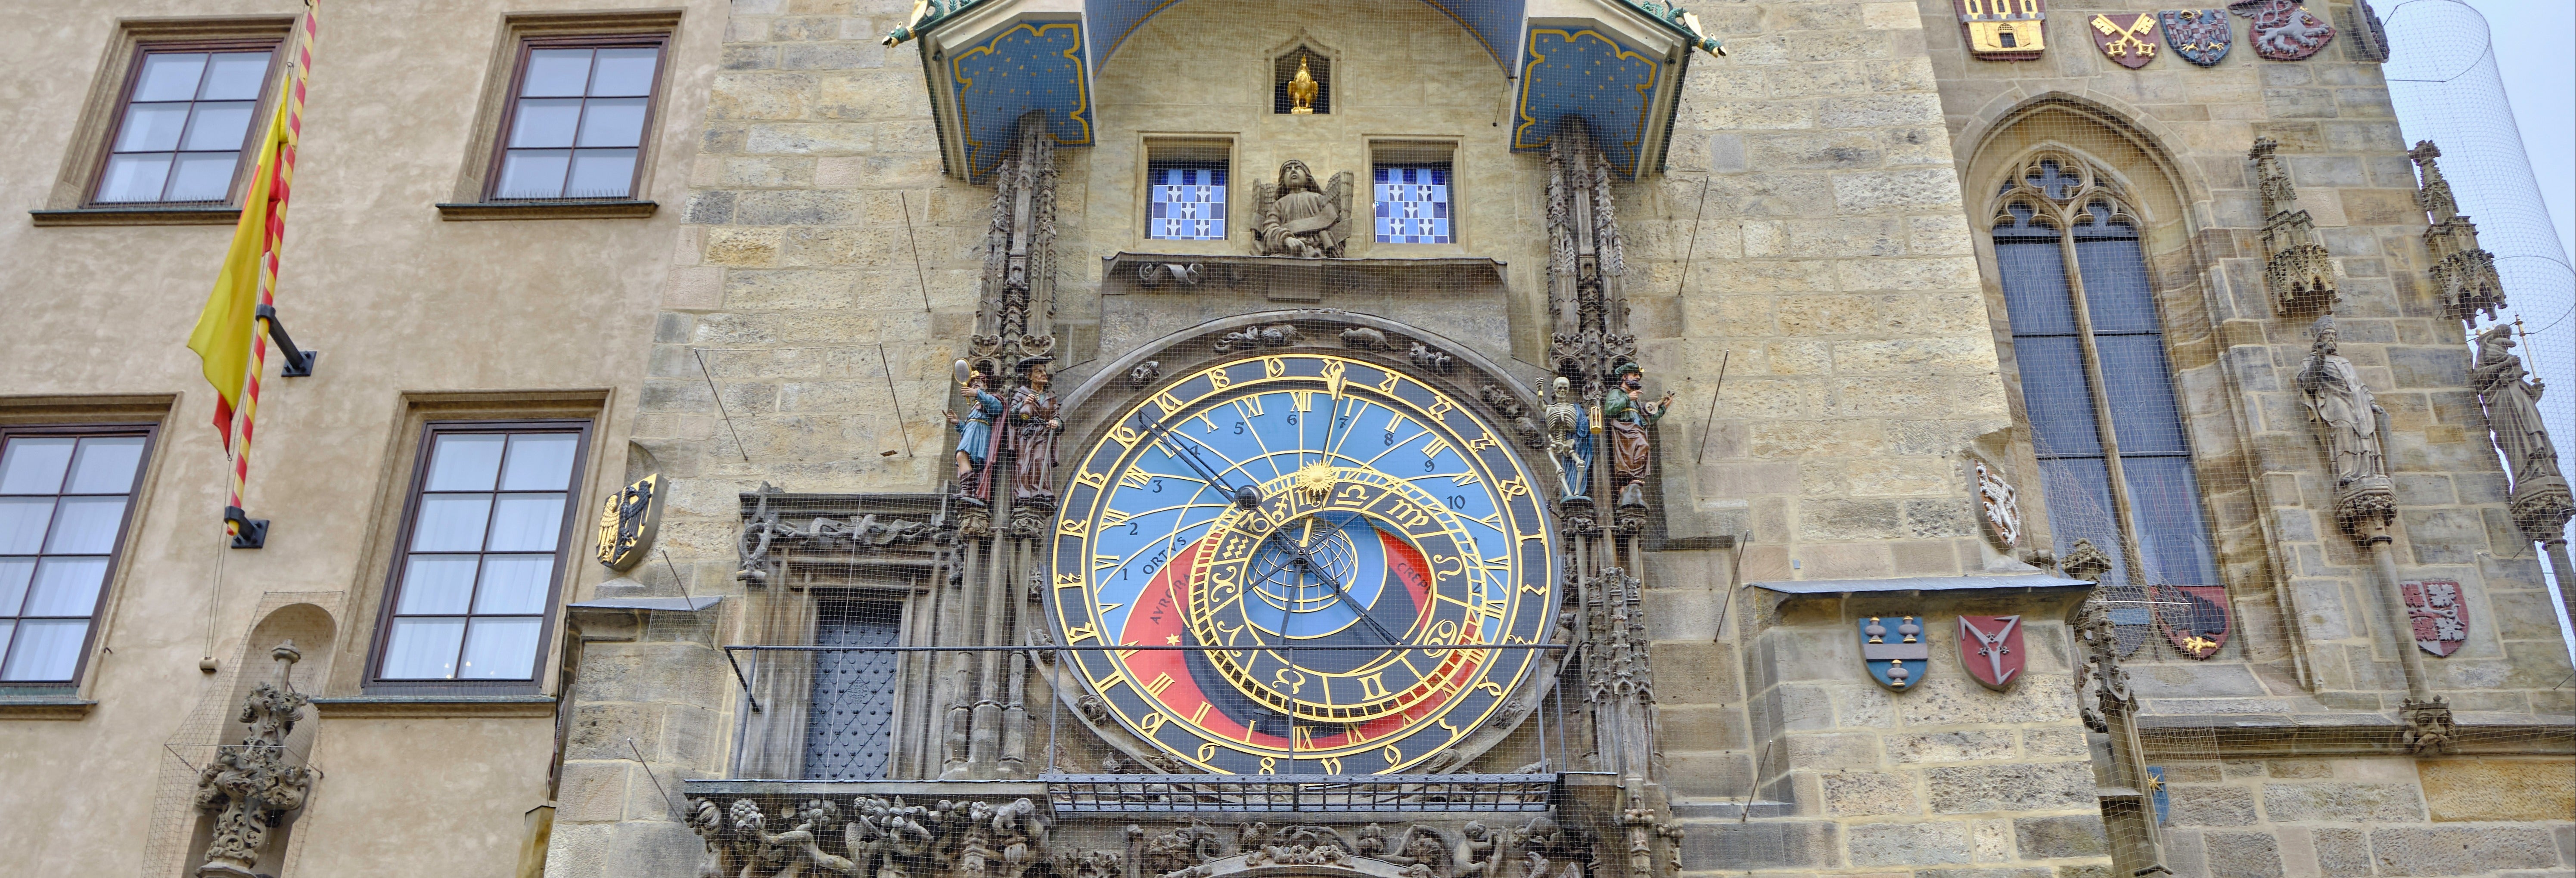 Tour subterráneo por la torre del Reloj Astronómico de Praga